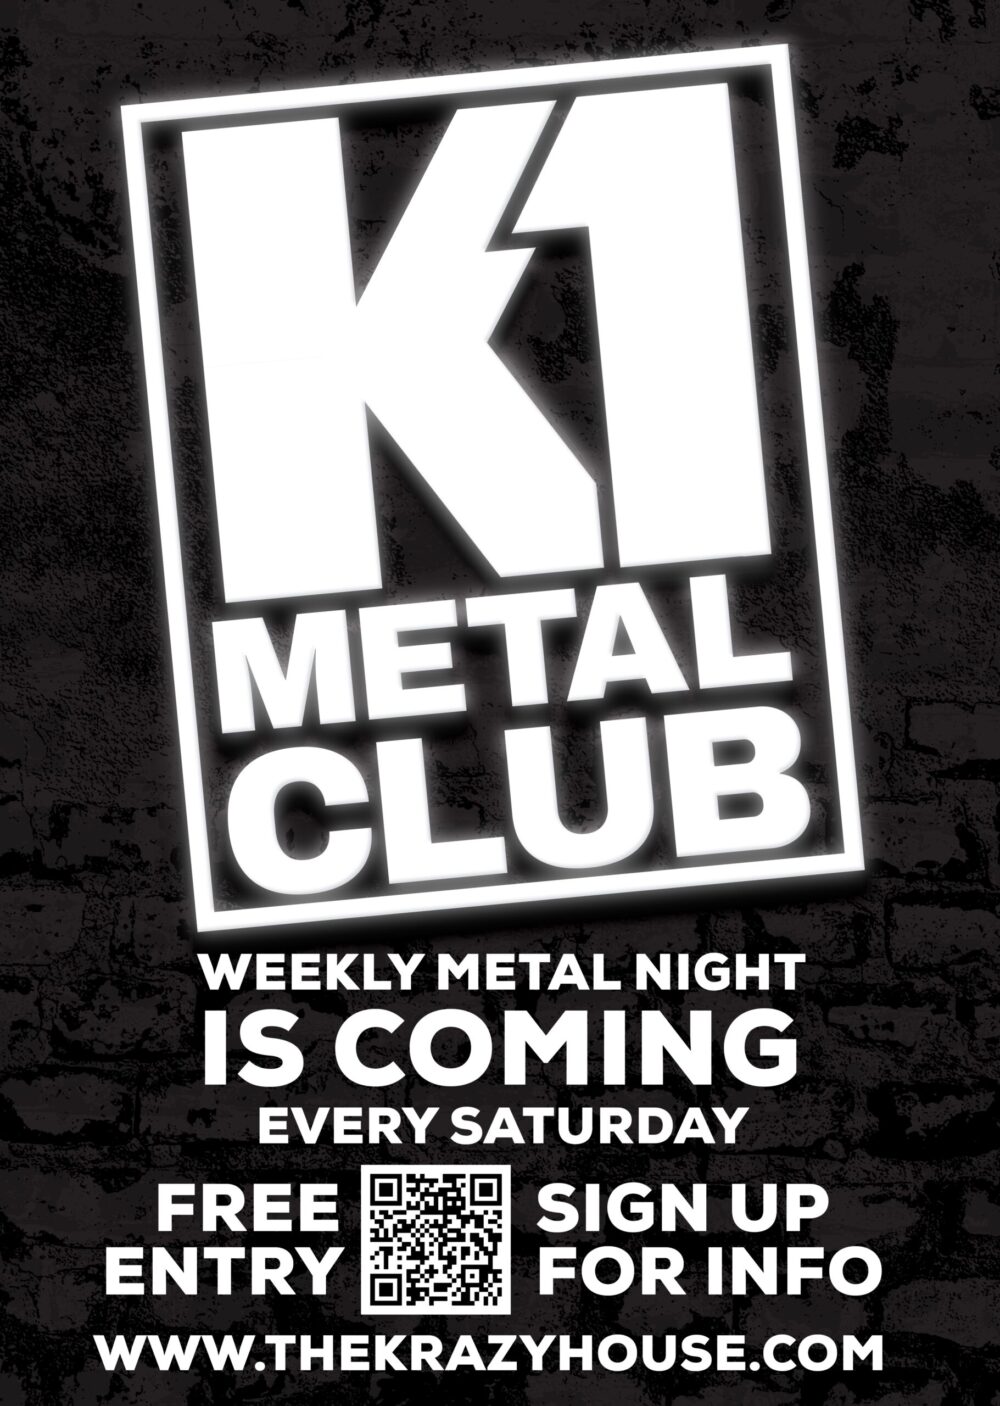 Credit: K1 Metal Club